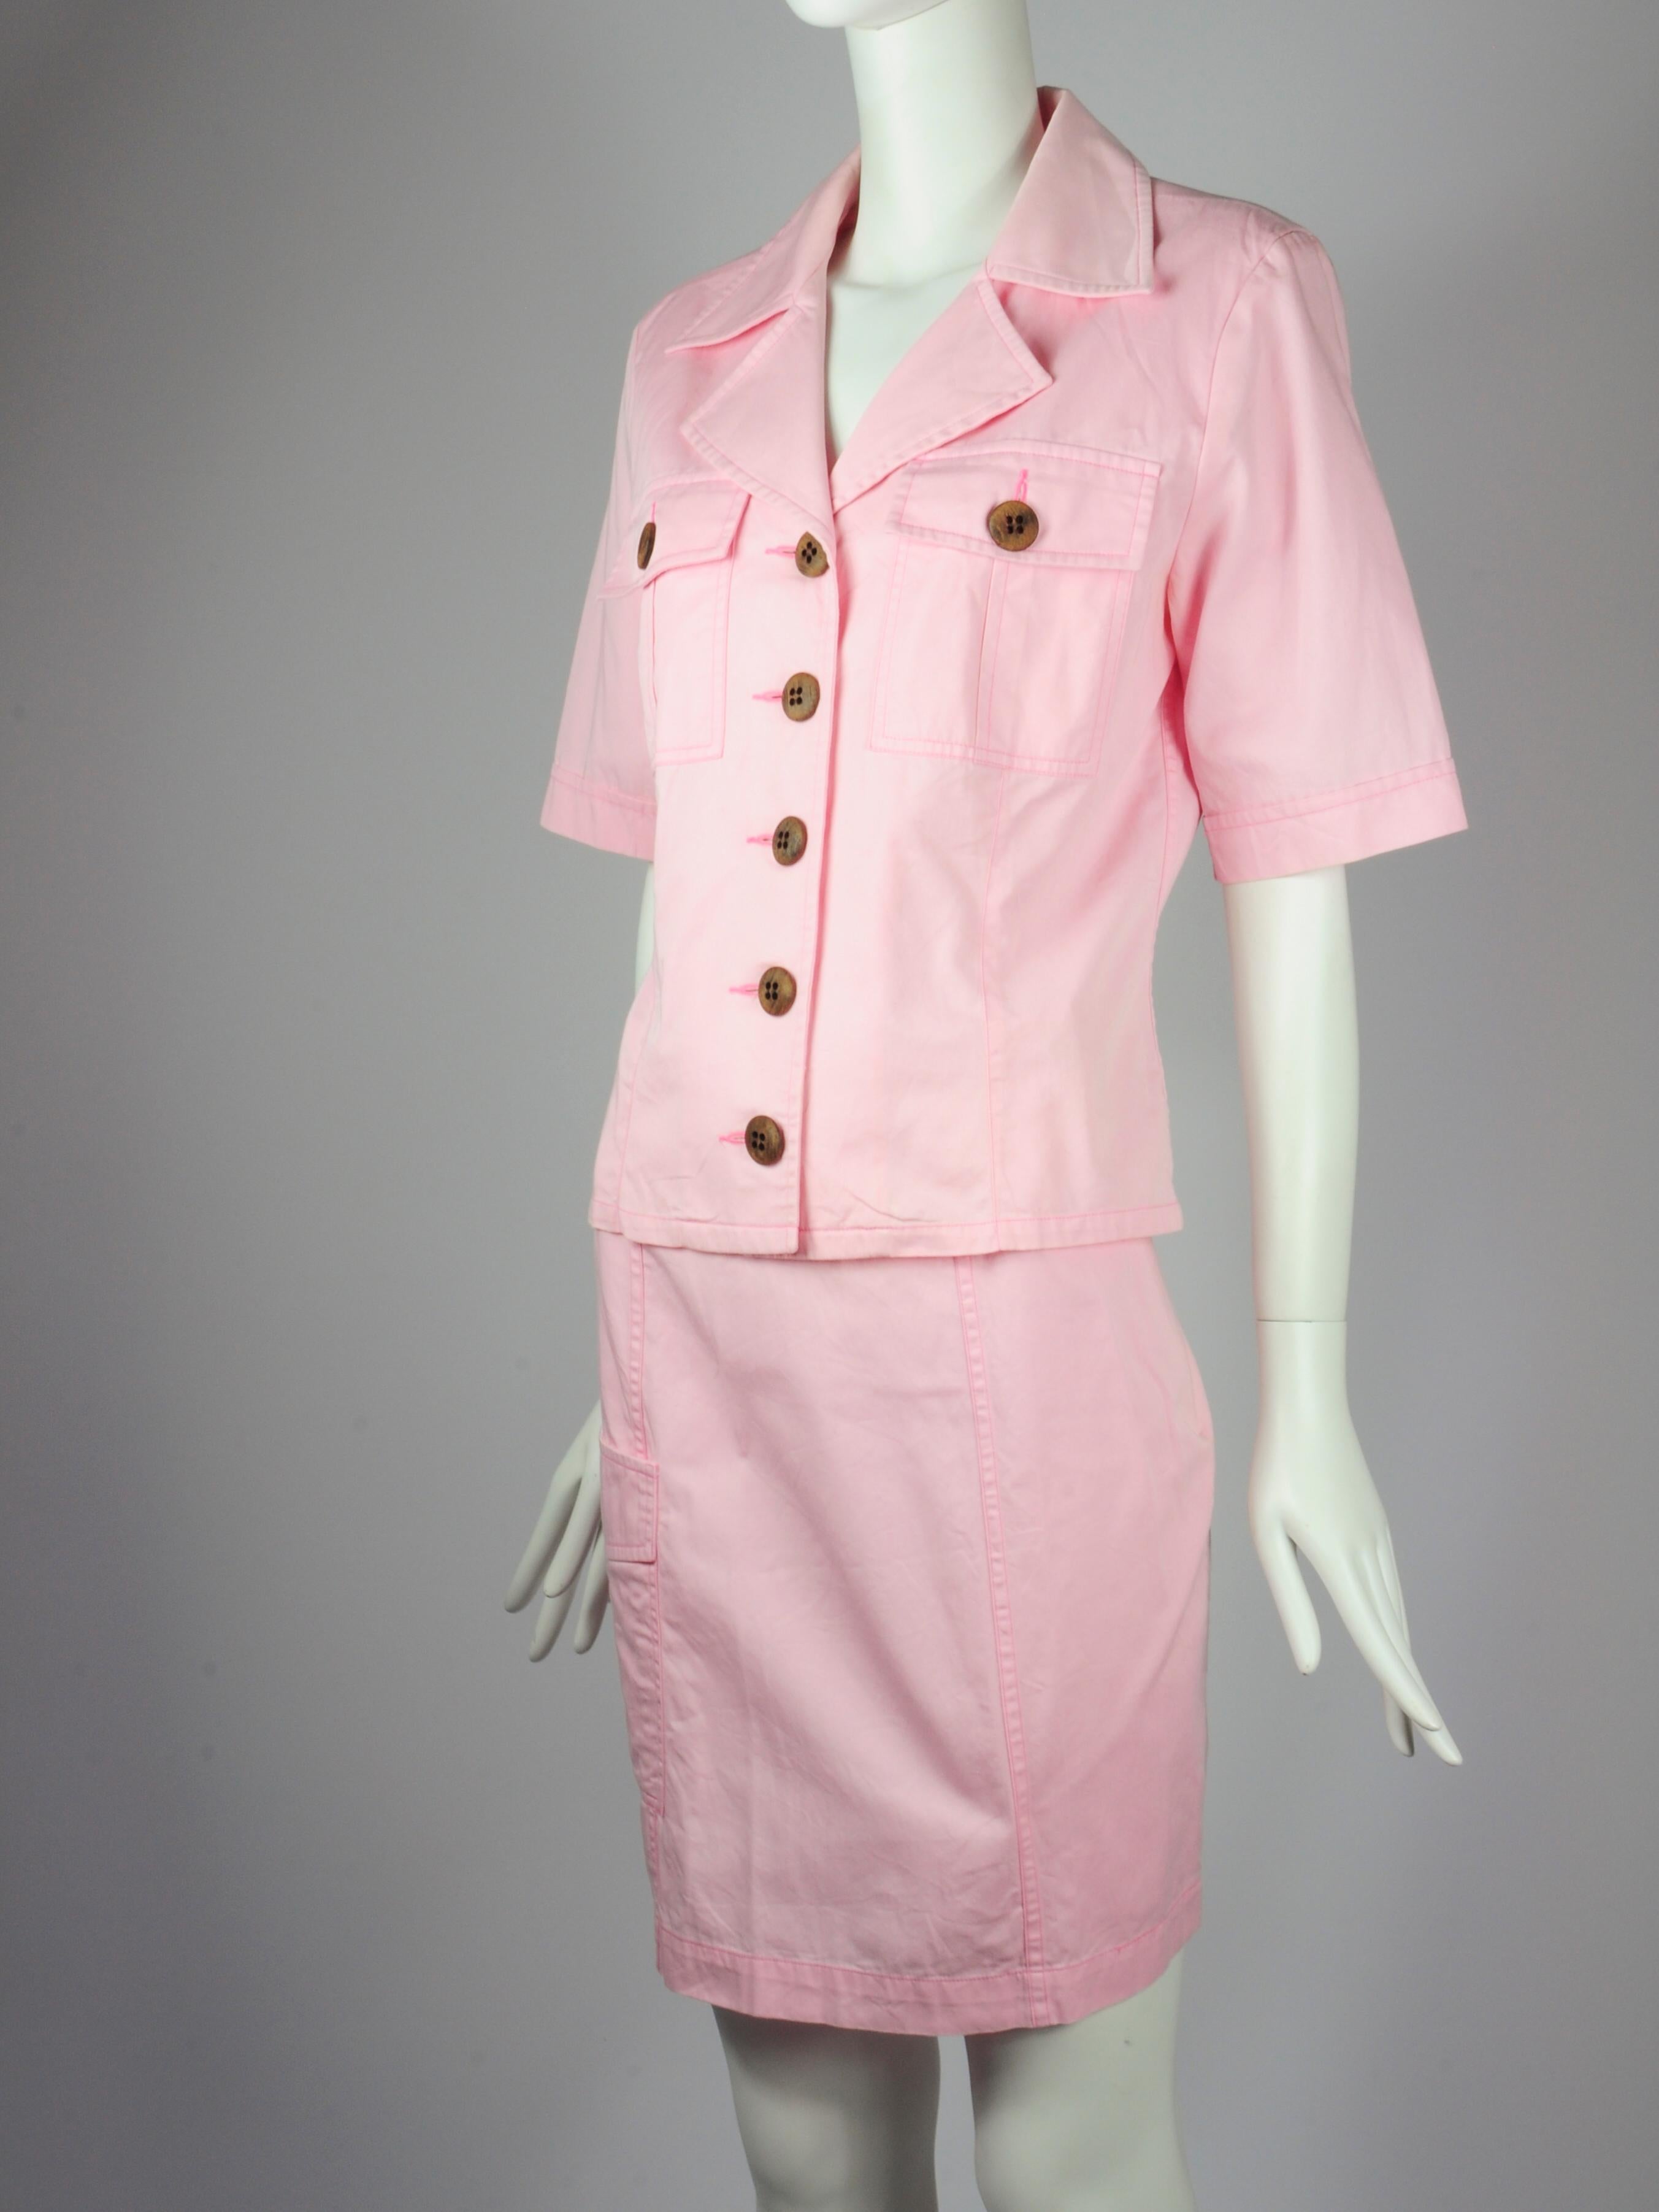 Yves Saint Laurent Saharienne Safari Two Piece Skirt Suit Set Pink Pockets 1990s For Sale 4